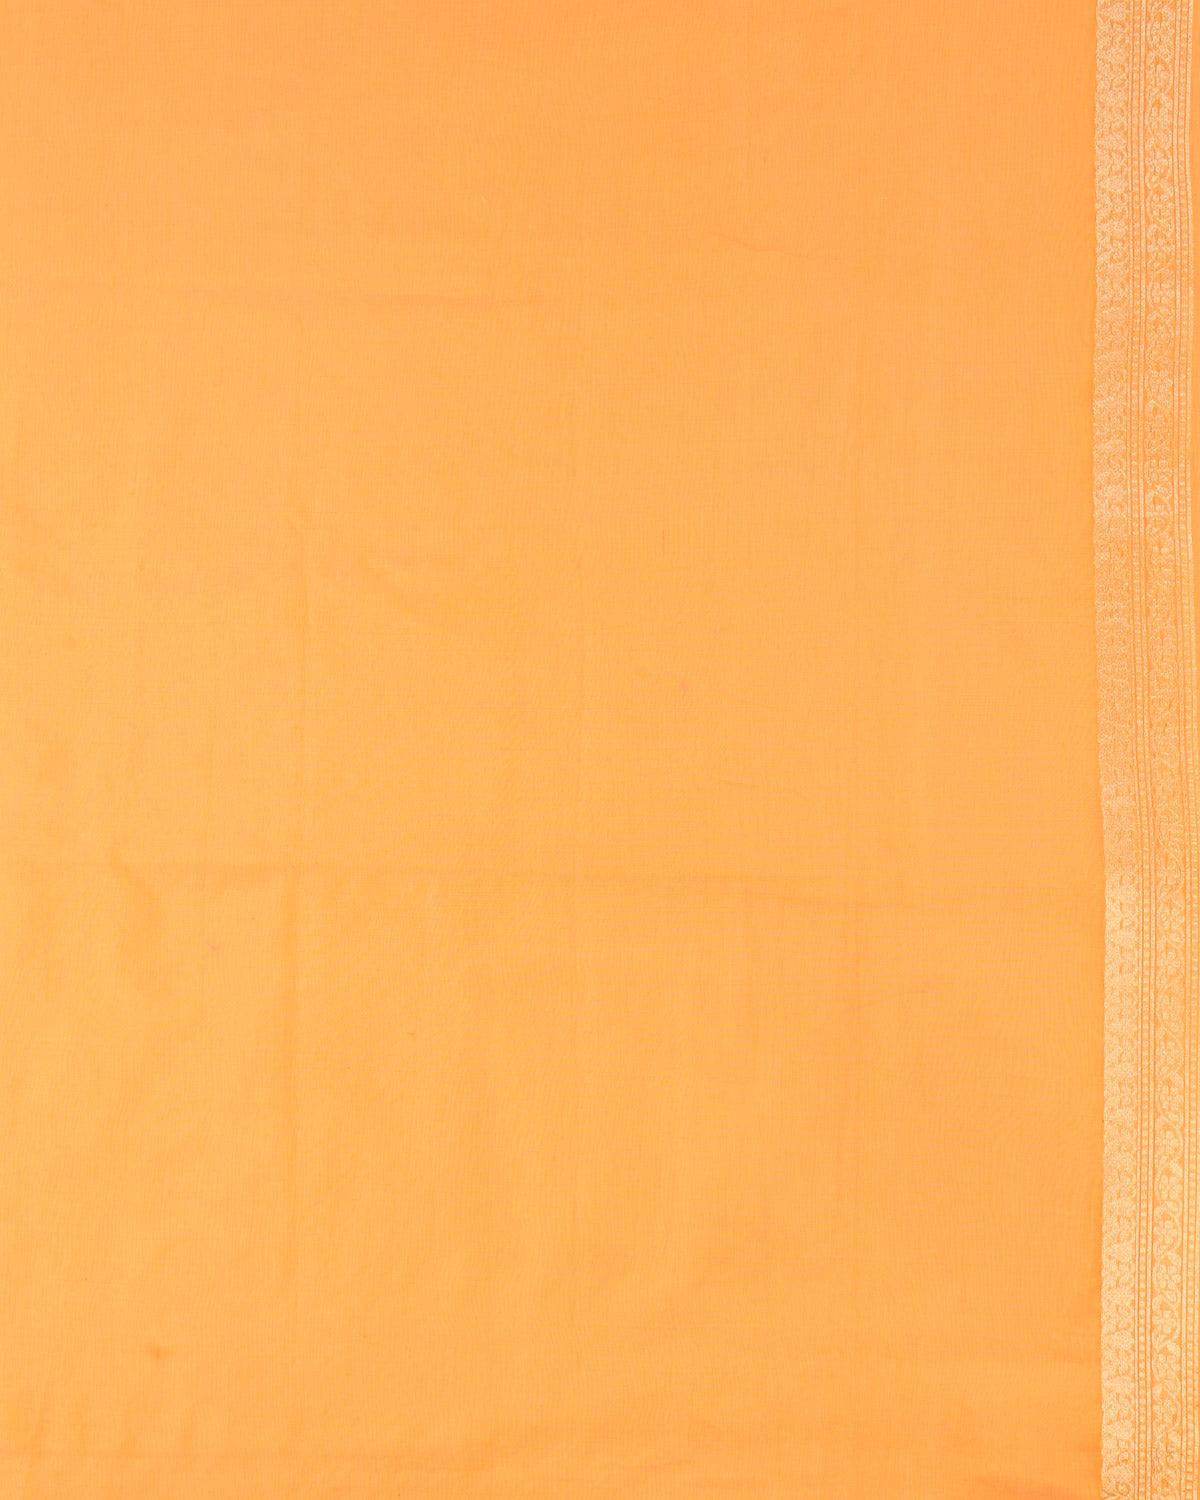 Orange Banarasi Gold Zari & White Diagonal Bel Cutwork Brocade Woven Art Cotton Silk Saree - By HolyWeaves, Benares